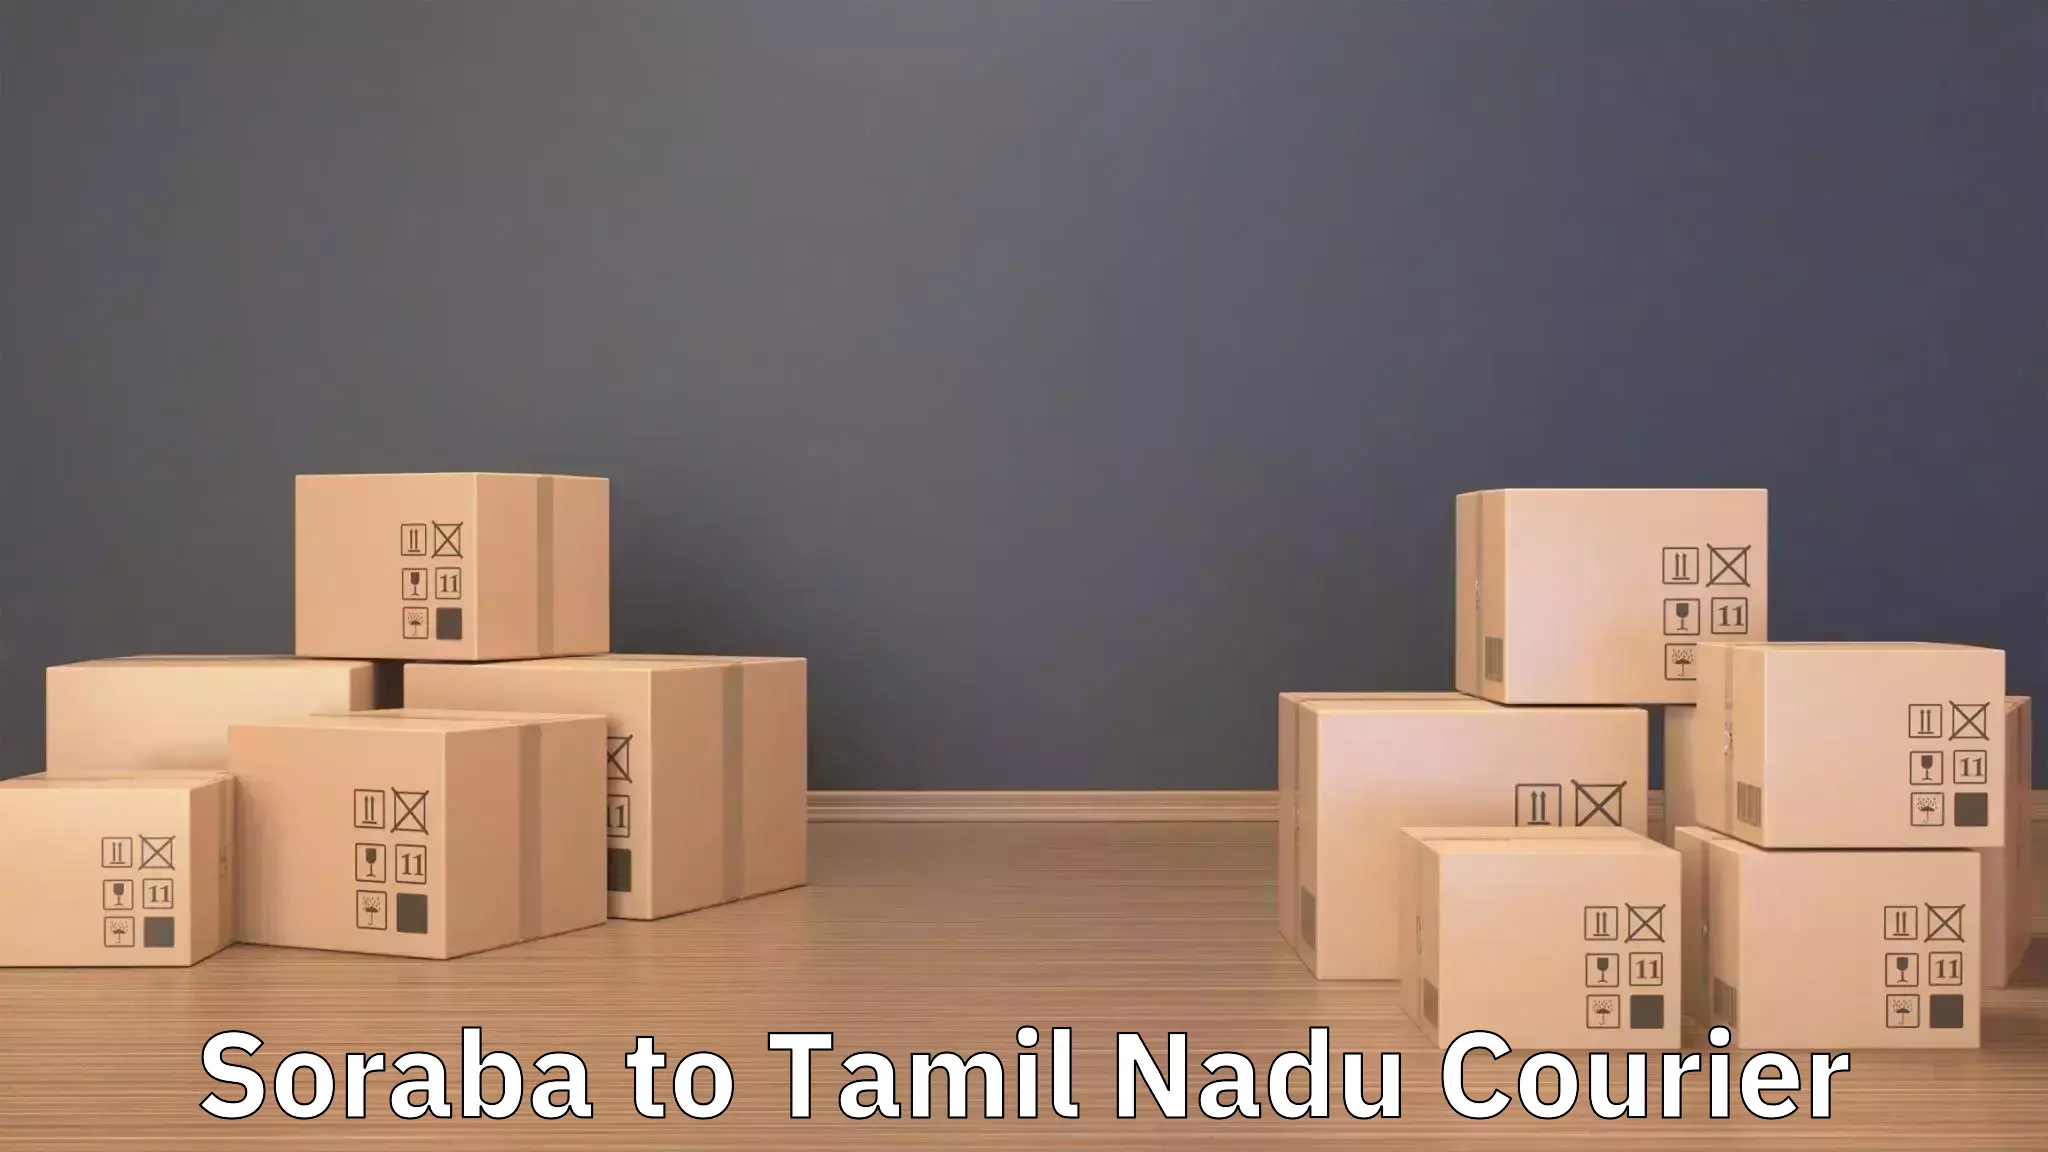 Efficient moving company Soraba to Chennai